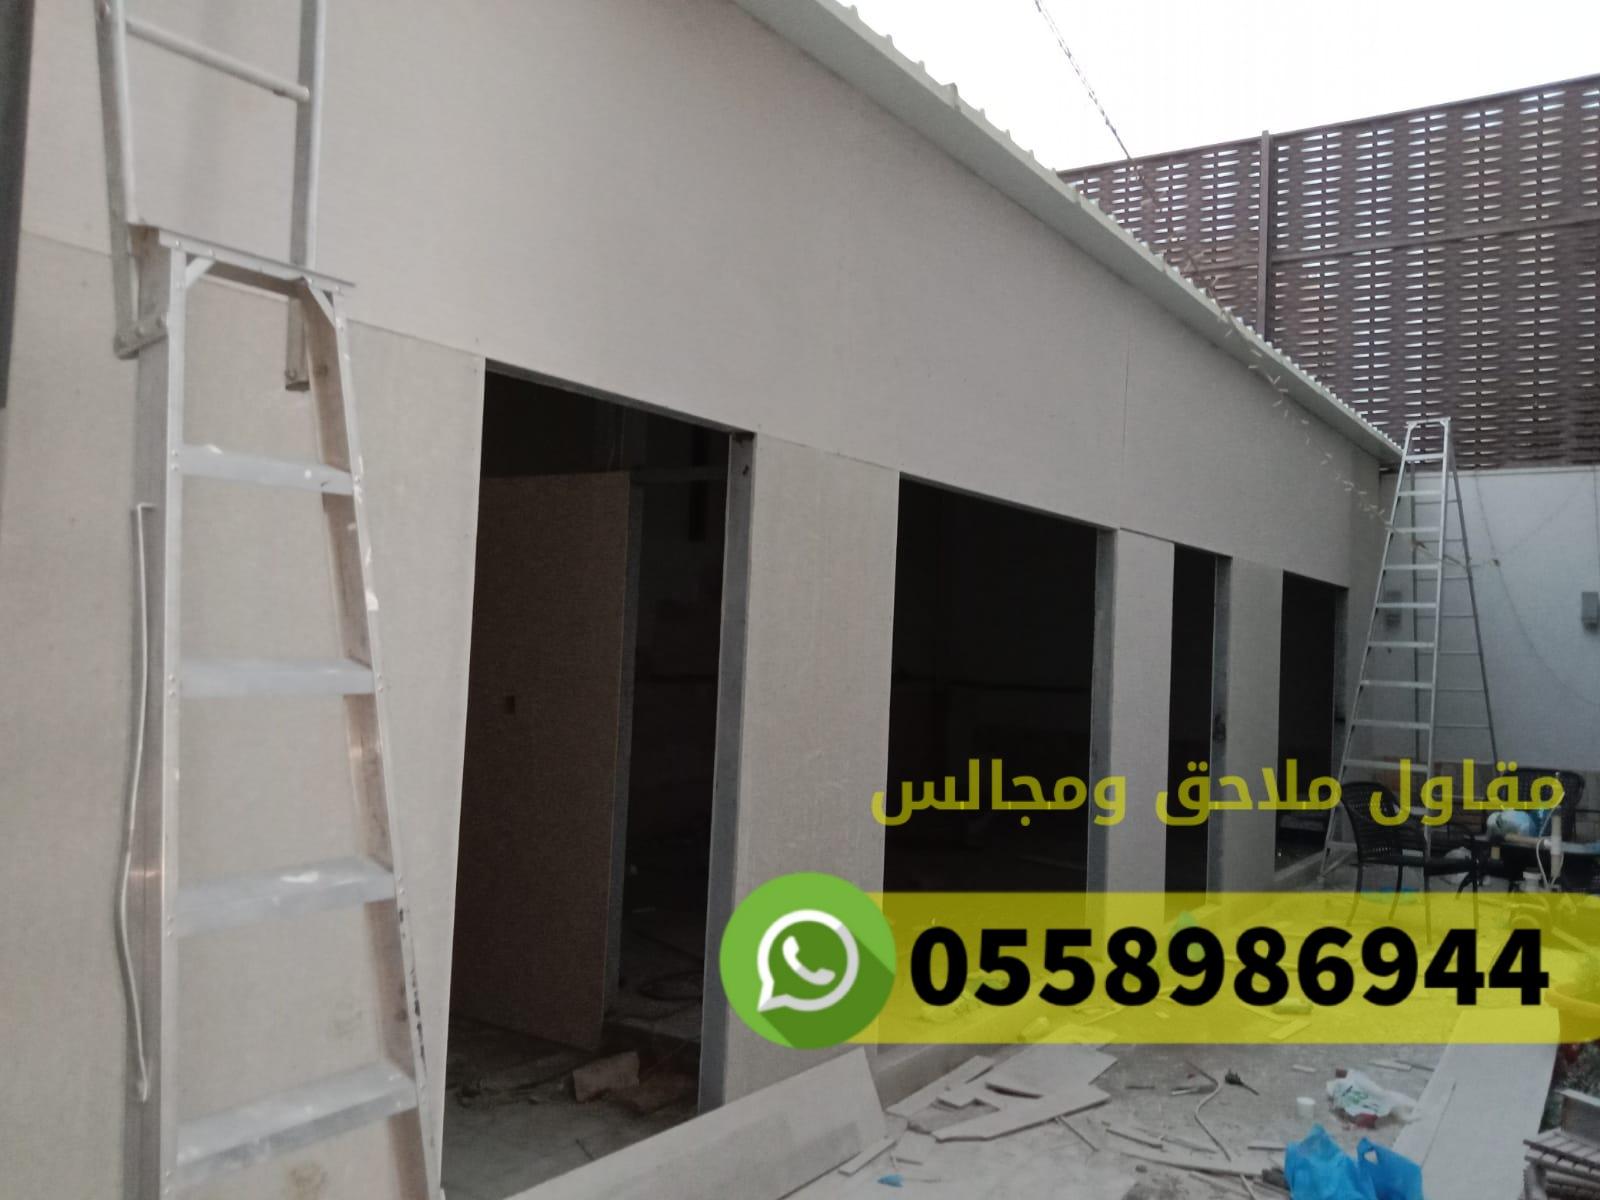 بناء غرف ملاحق مجالس في مكة المكرمة حي النوارية ,0558986944 661312421